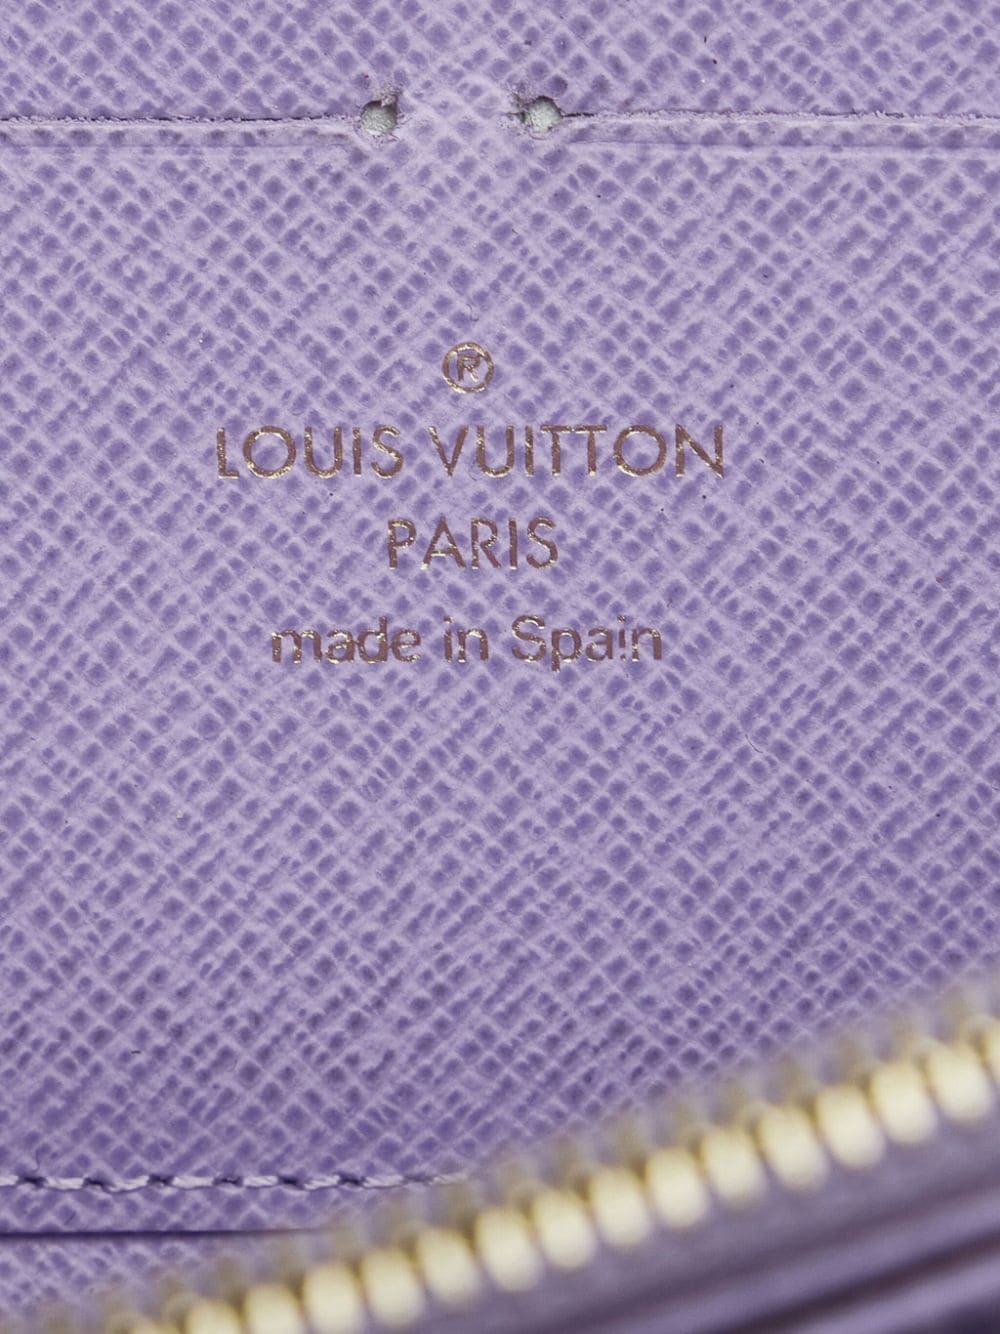 Louis Vuitton 2012 pre-owned Zippy XL Wallet - Farfetch